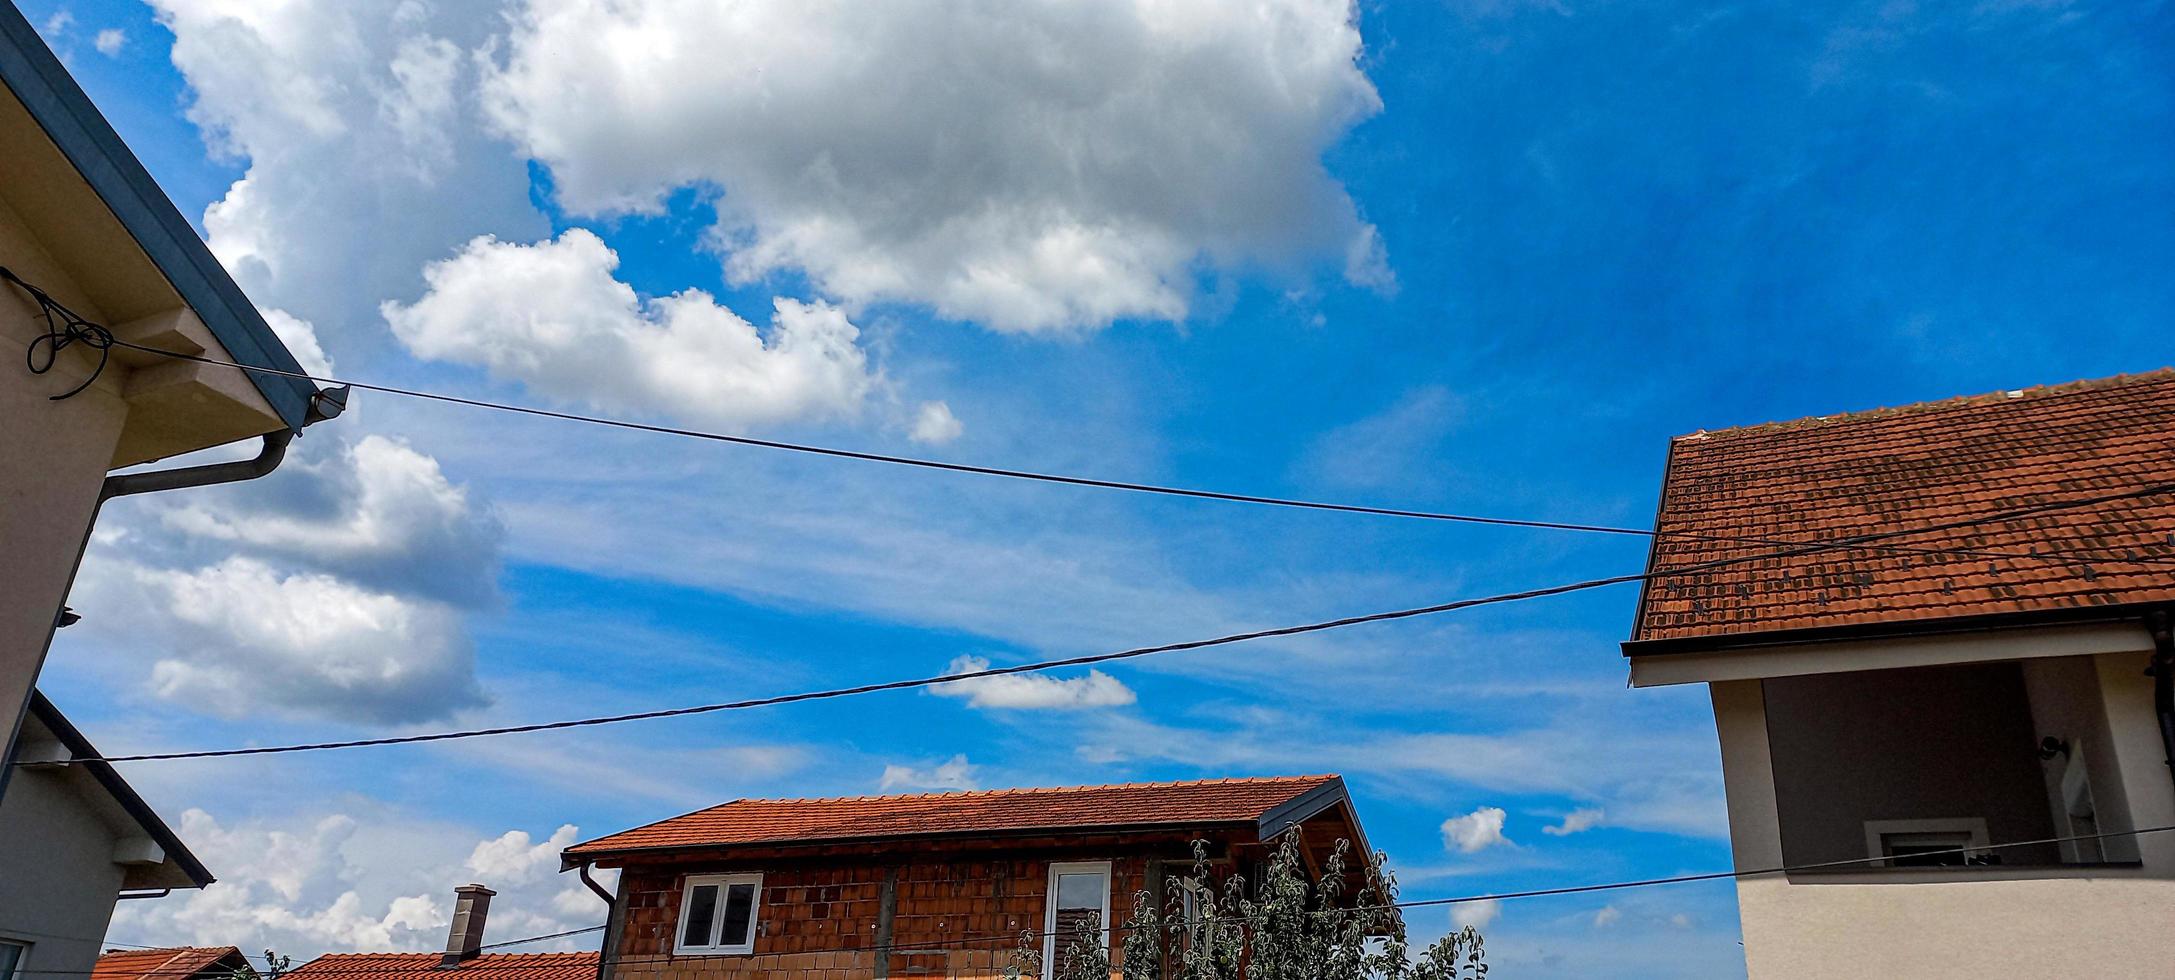 geweldige belgrado wolken servië foto